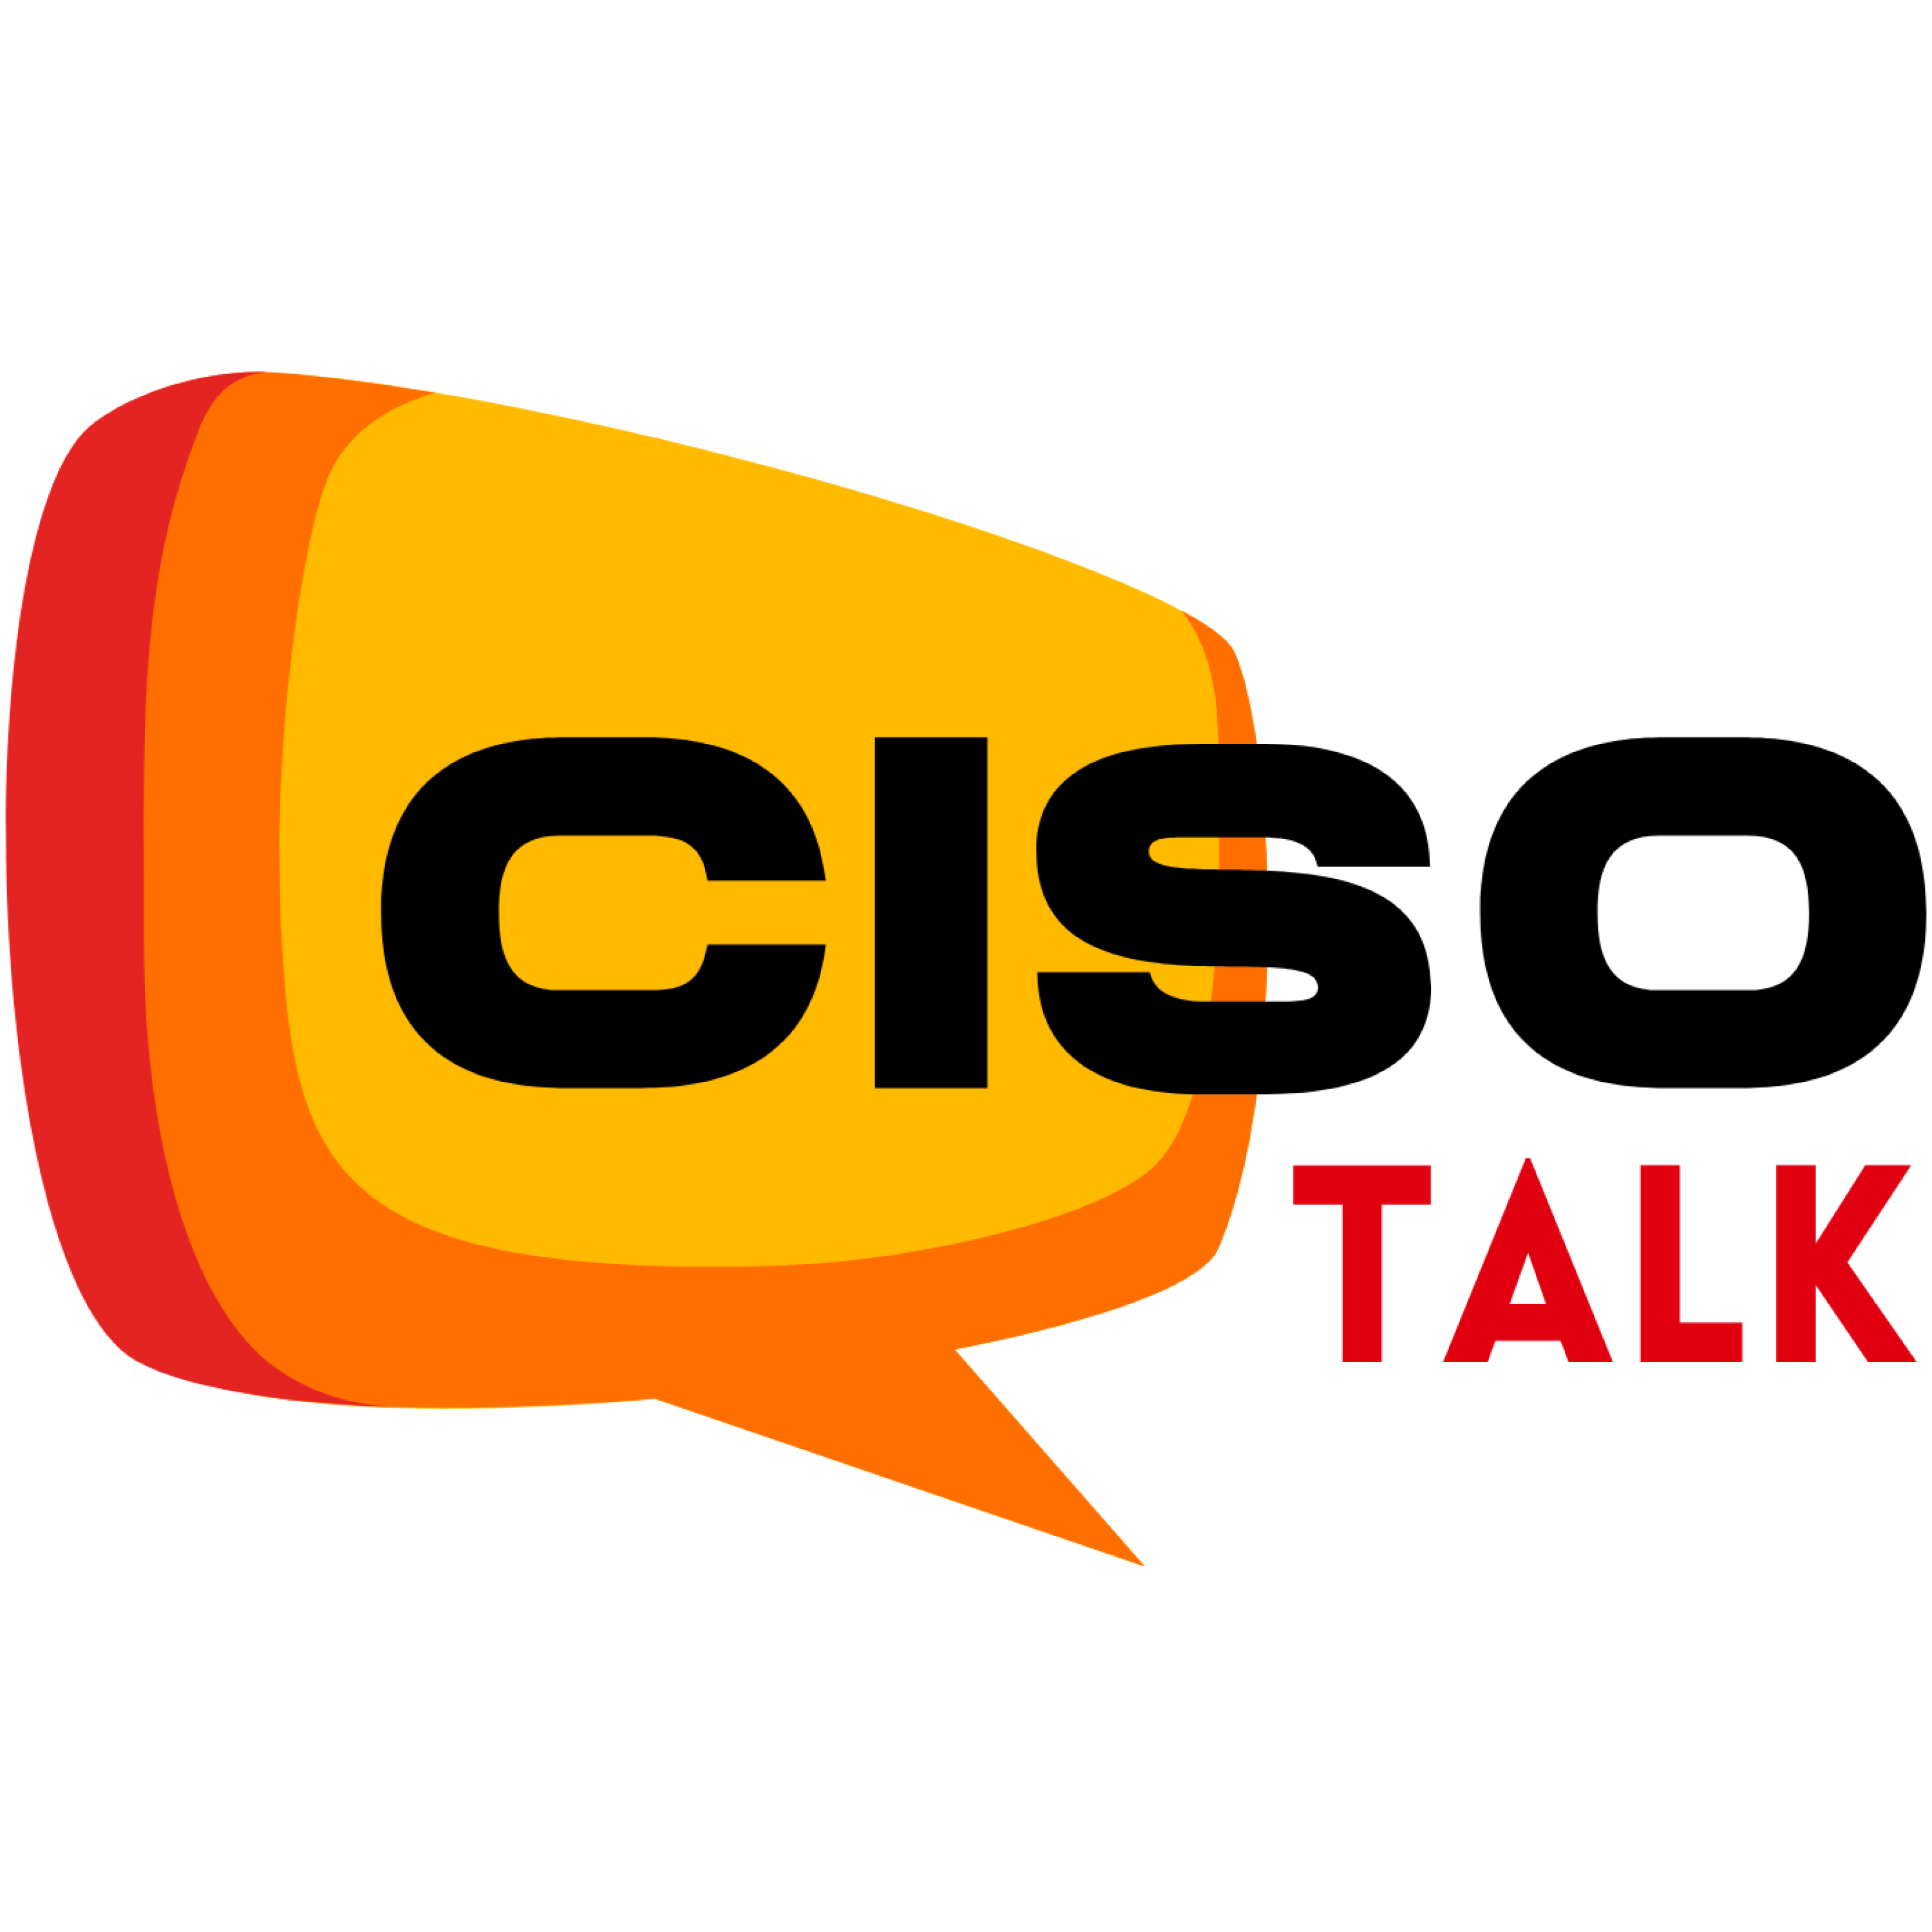 CISO Talk - Video